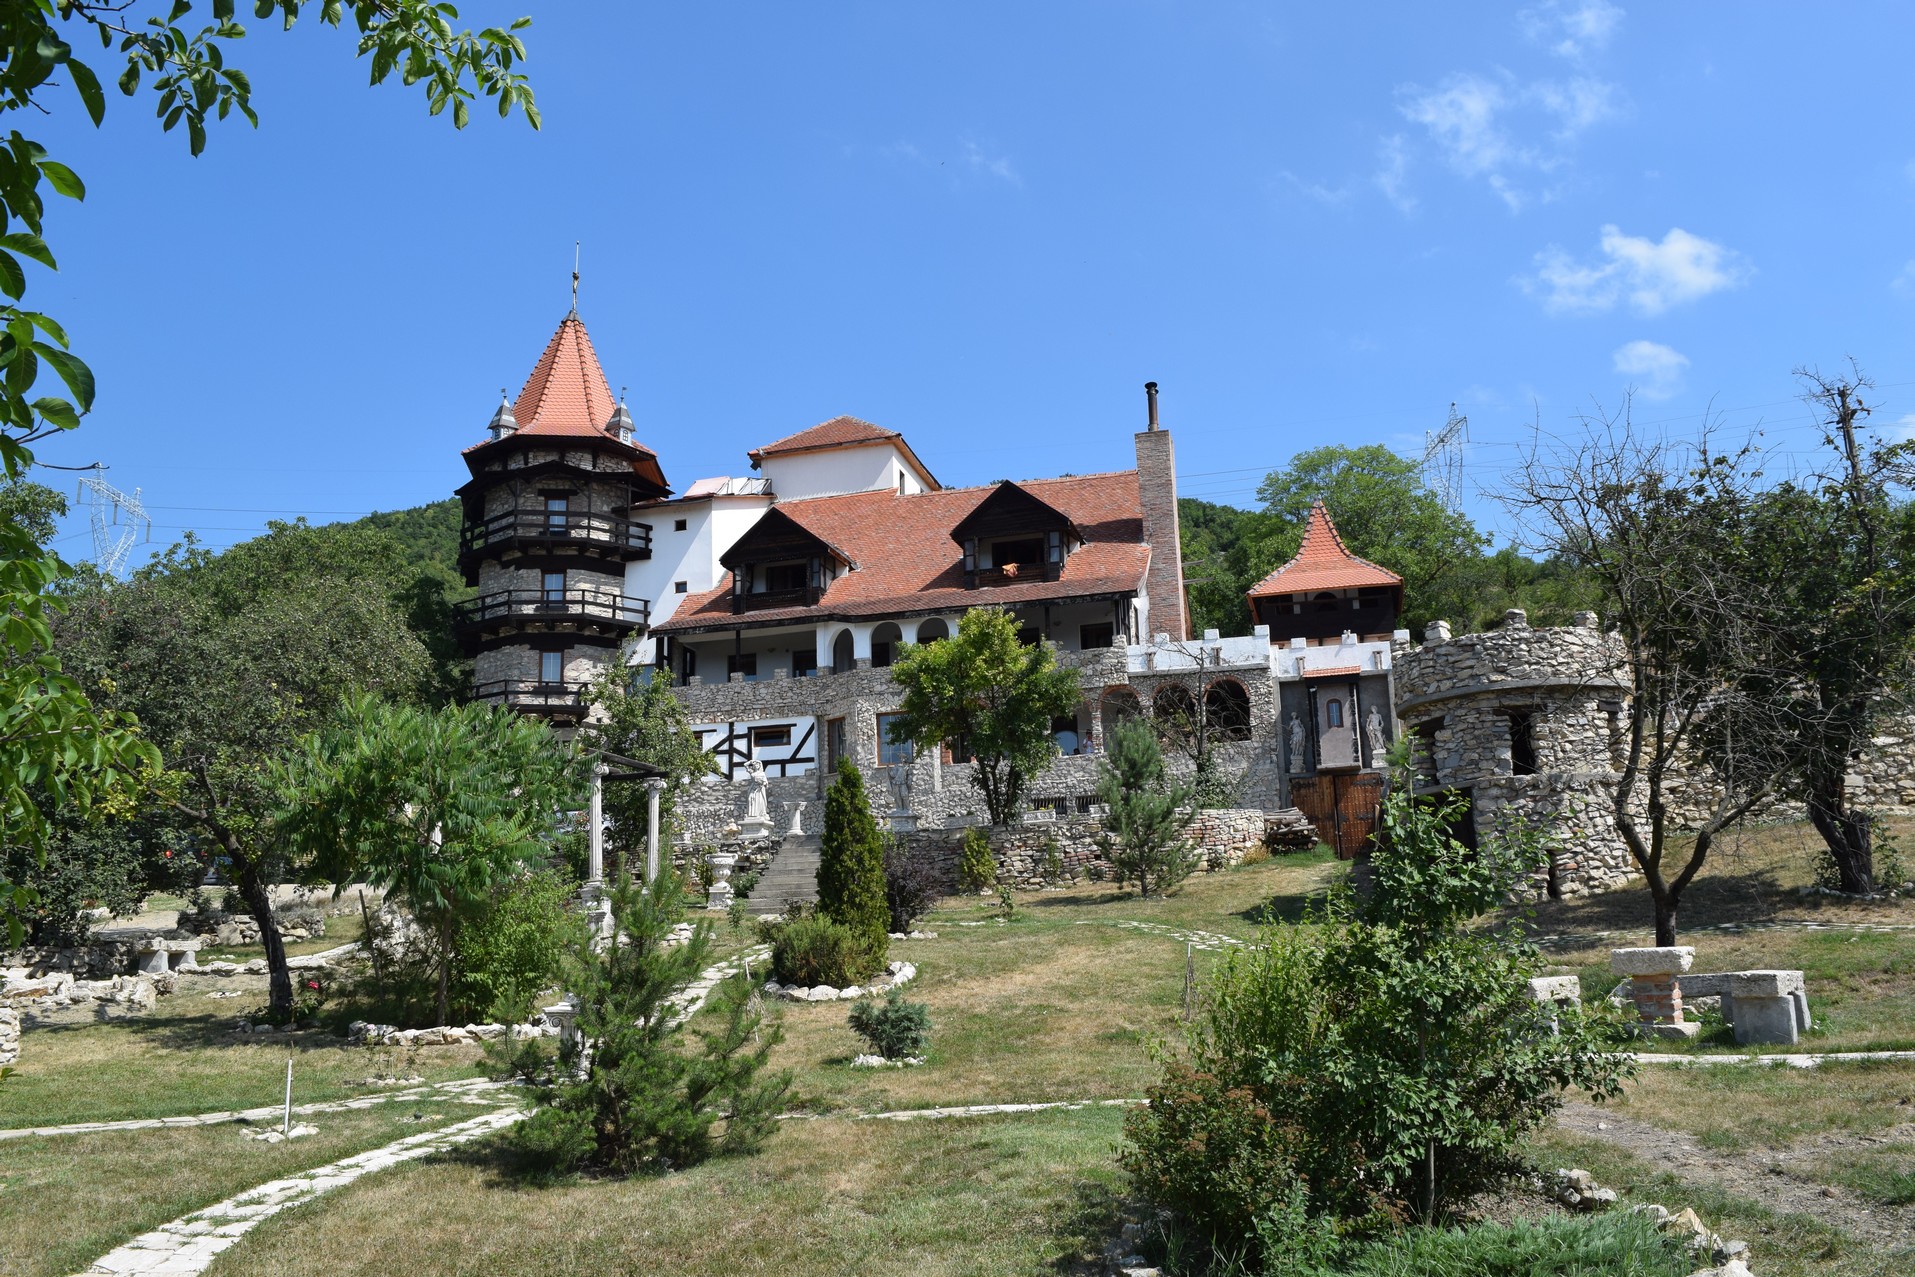 Lupilor Castle